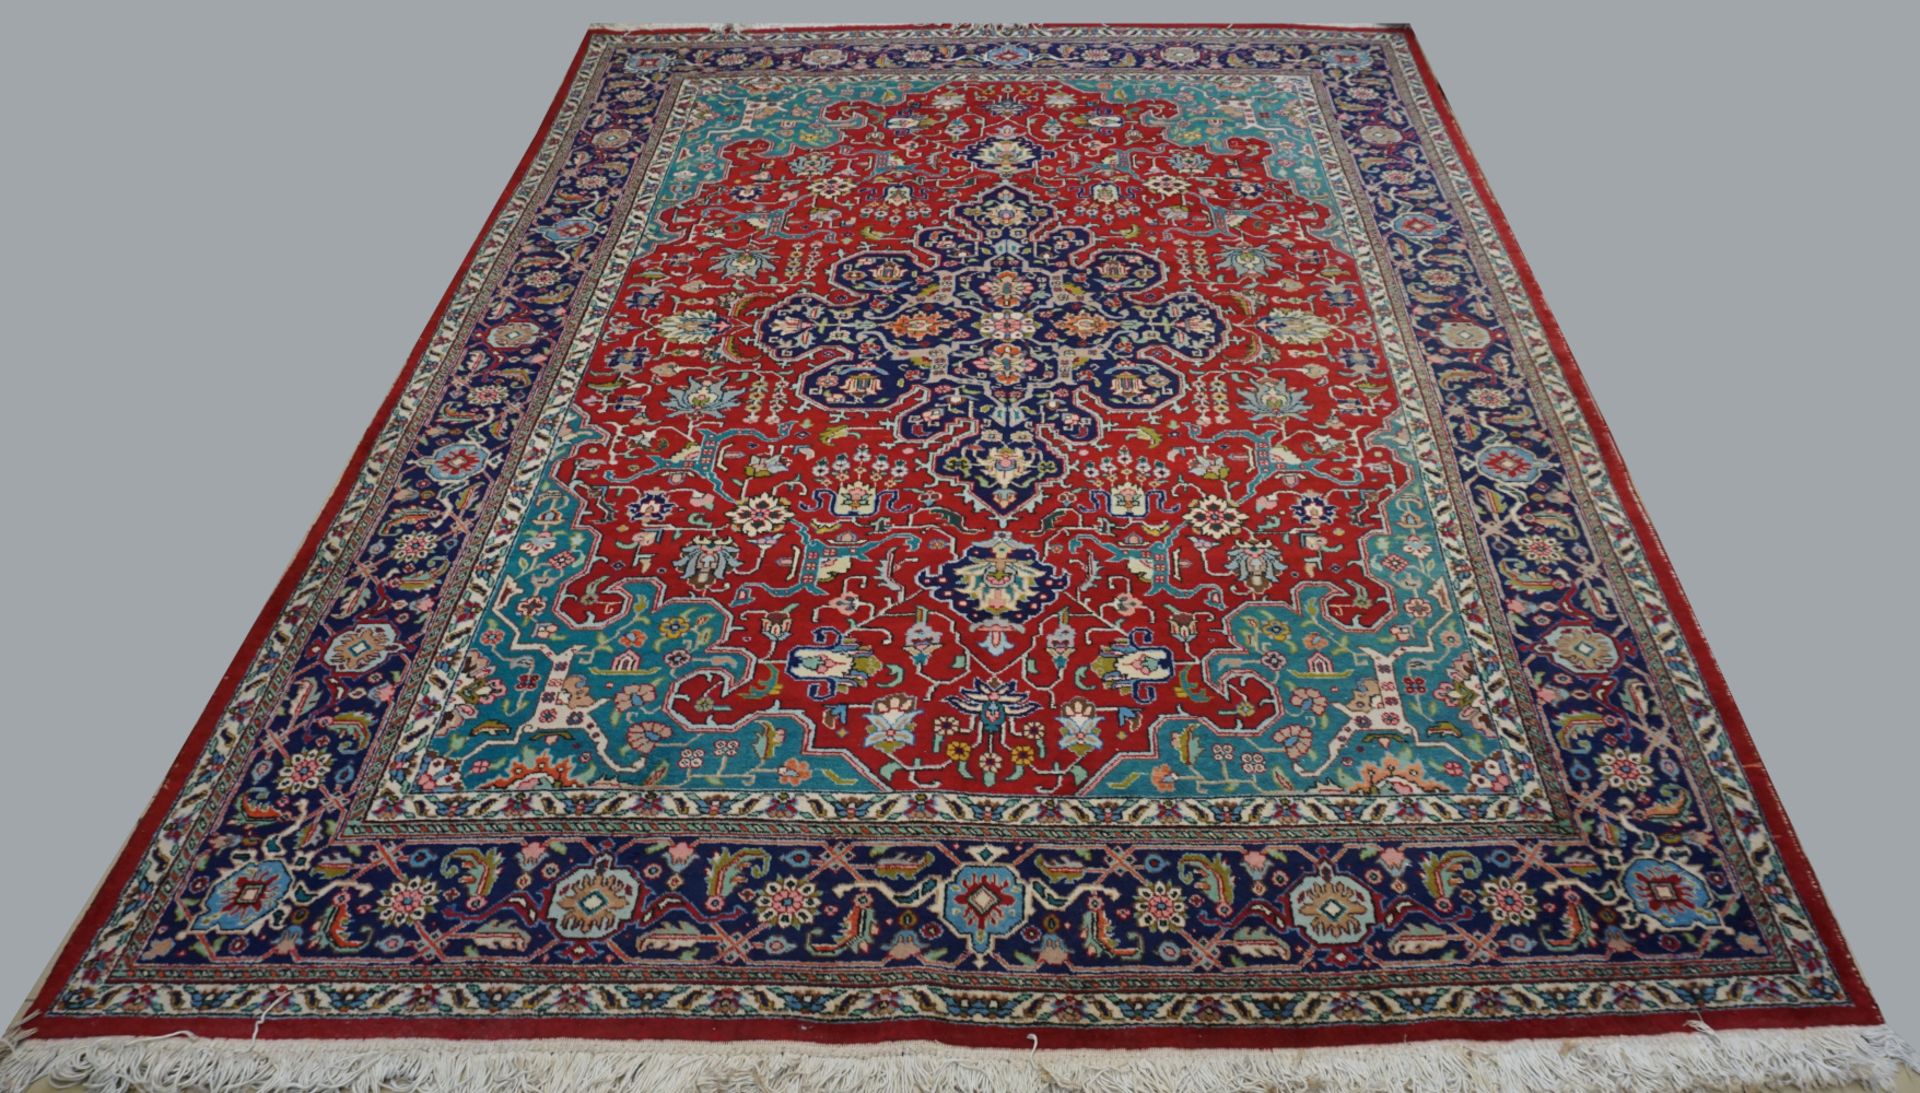 2 großformatige Teppiche: 1x TÄBRIZ rotgrundig mit geometrischfloralem Dekor 346x261cm,